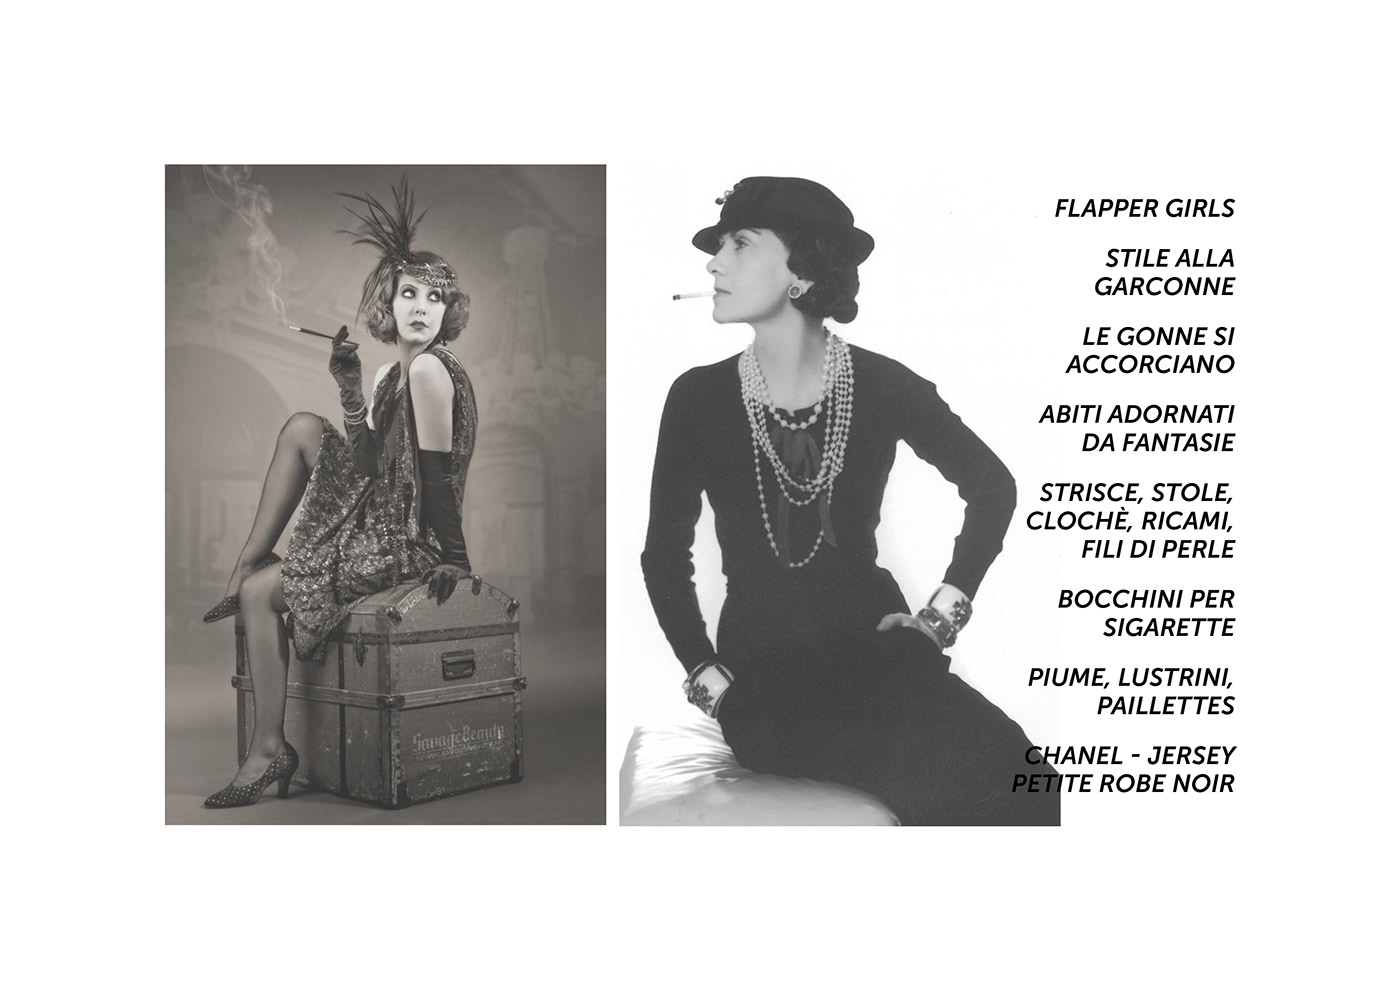 Bebopalula vintage Fashion  design tailoring branding  vintage style flapper girl pin up perla